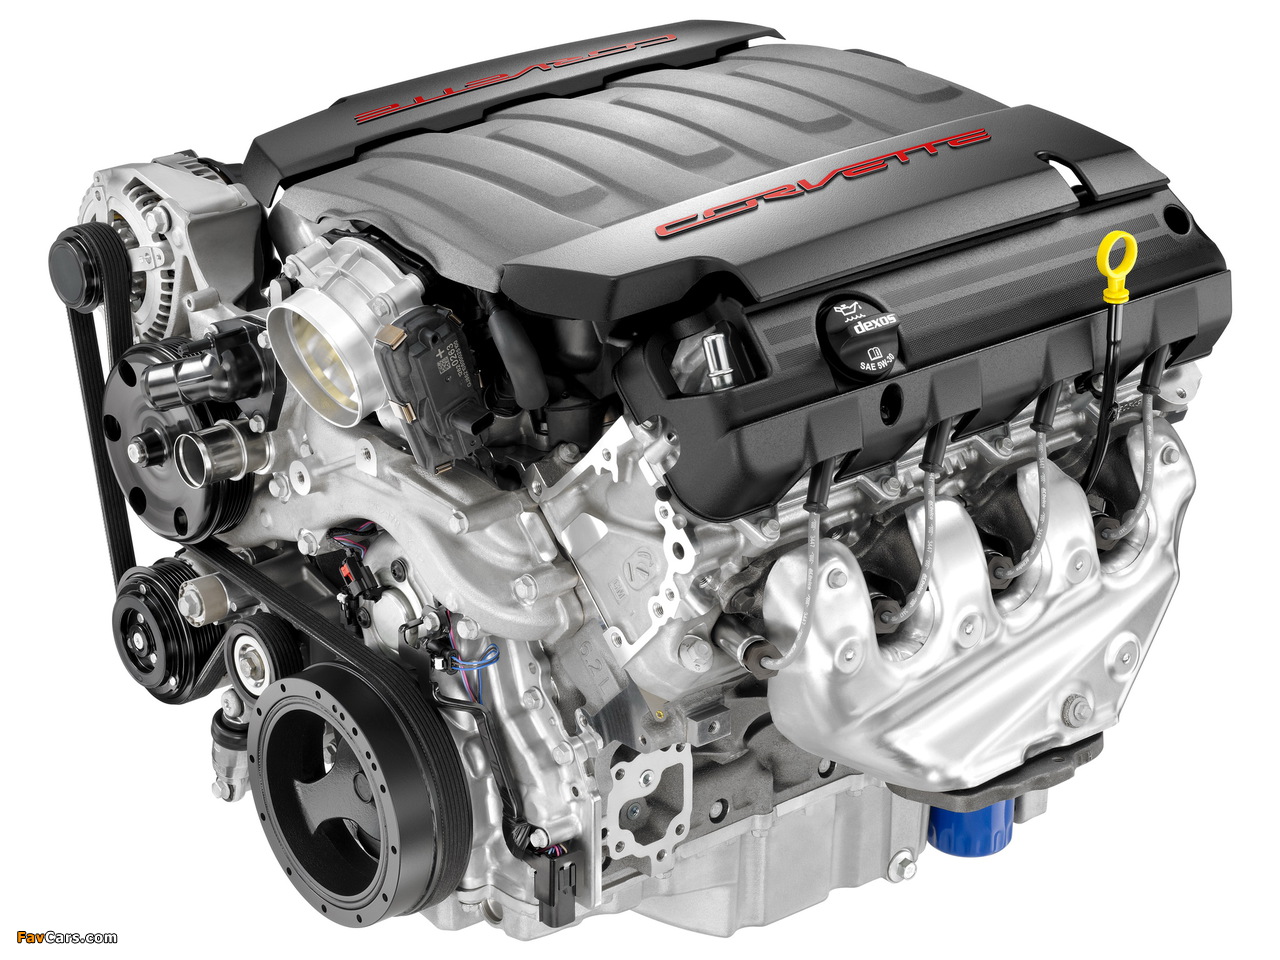 Photos of Engines  Corvette LT1 6.2L V-8 VVT DI (1280 x 960)